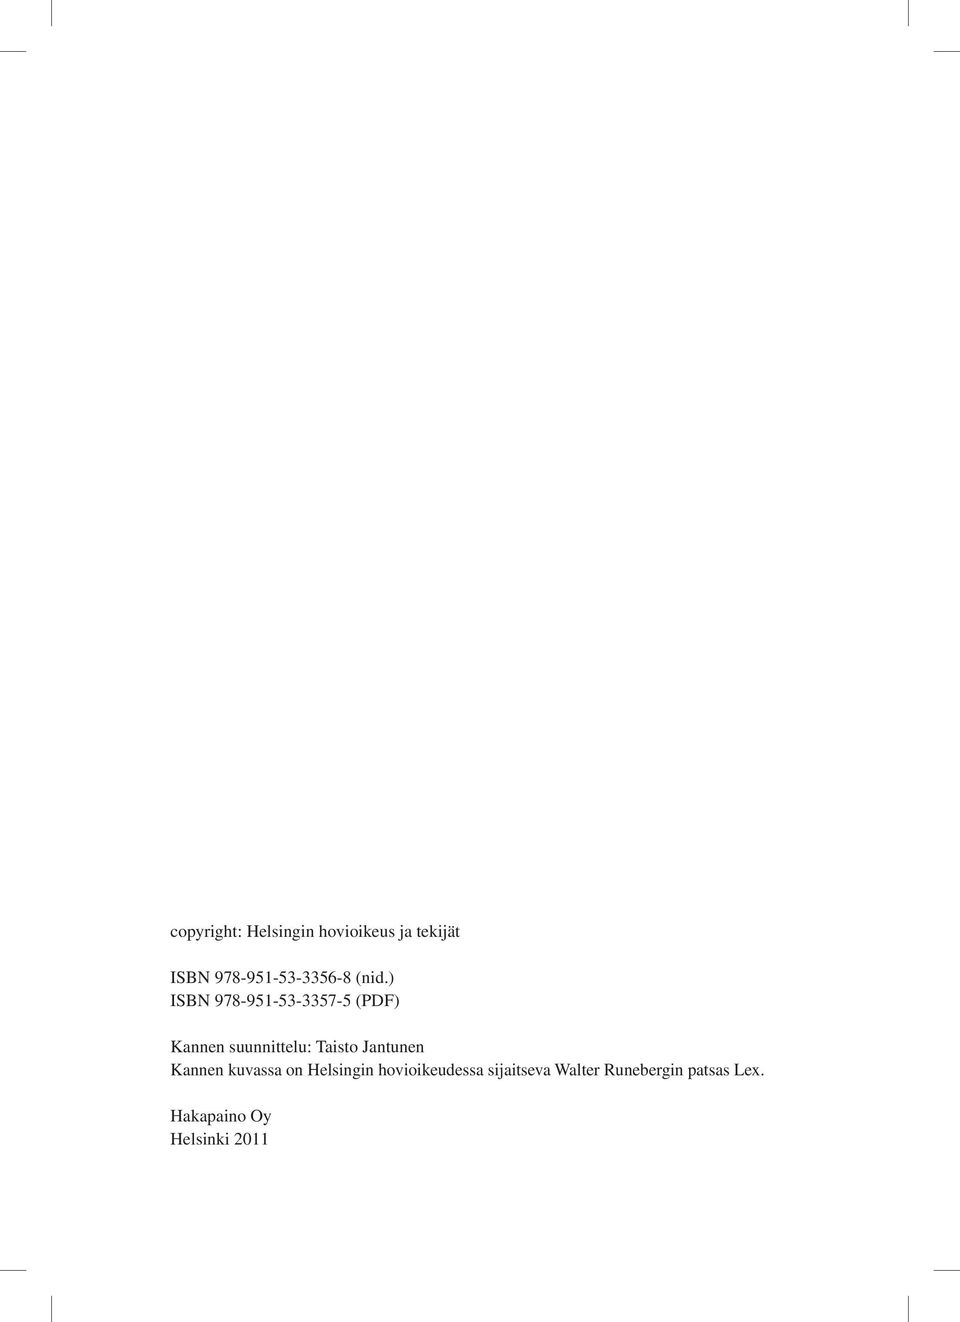 ) ISBN 978-951-53-3357-5 (PDF) Kannen suunnittelu: Taisto